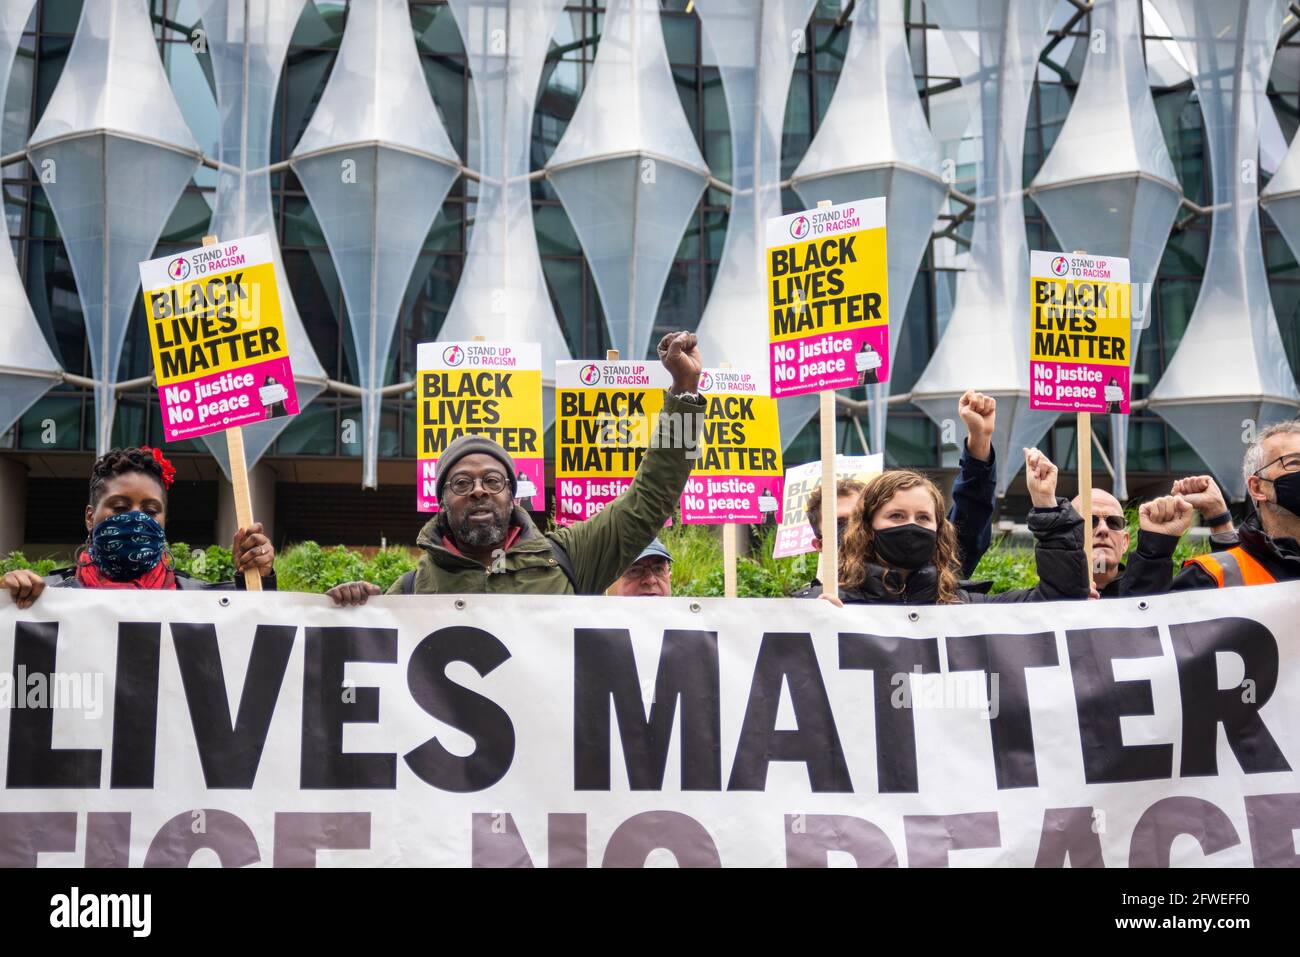 Ambasciata DEGLI STATI UNITI, Nine Elms, Londra, Regno Unito. 22 maggio 2021. In prossimità del primo anniversario della morte di George Floyd, una protesta commemorativa si sta svolgendo fuori dall'ambasciata degli Stati Uniti a Londra. Guidato dal gruppo Stand Up to Racism e Black Lives Matter Foto Stock